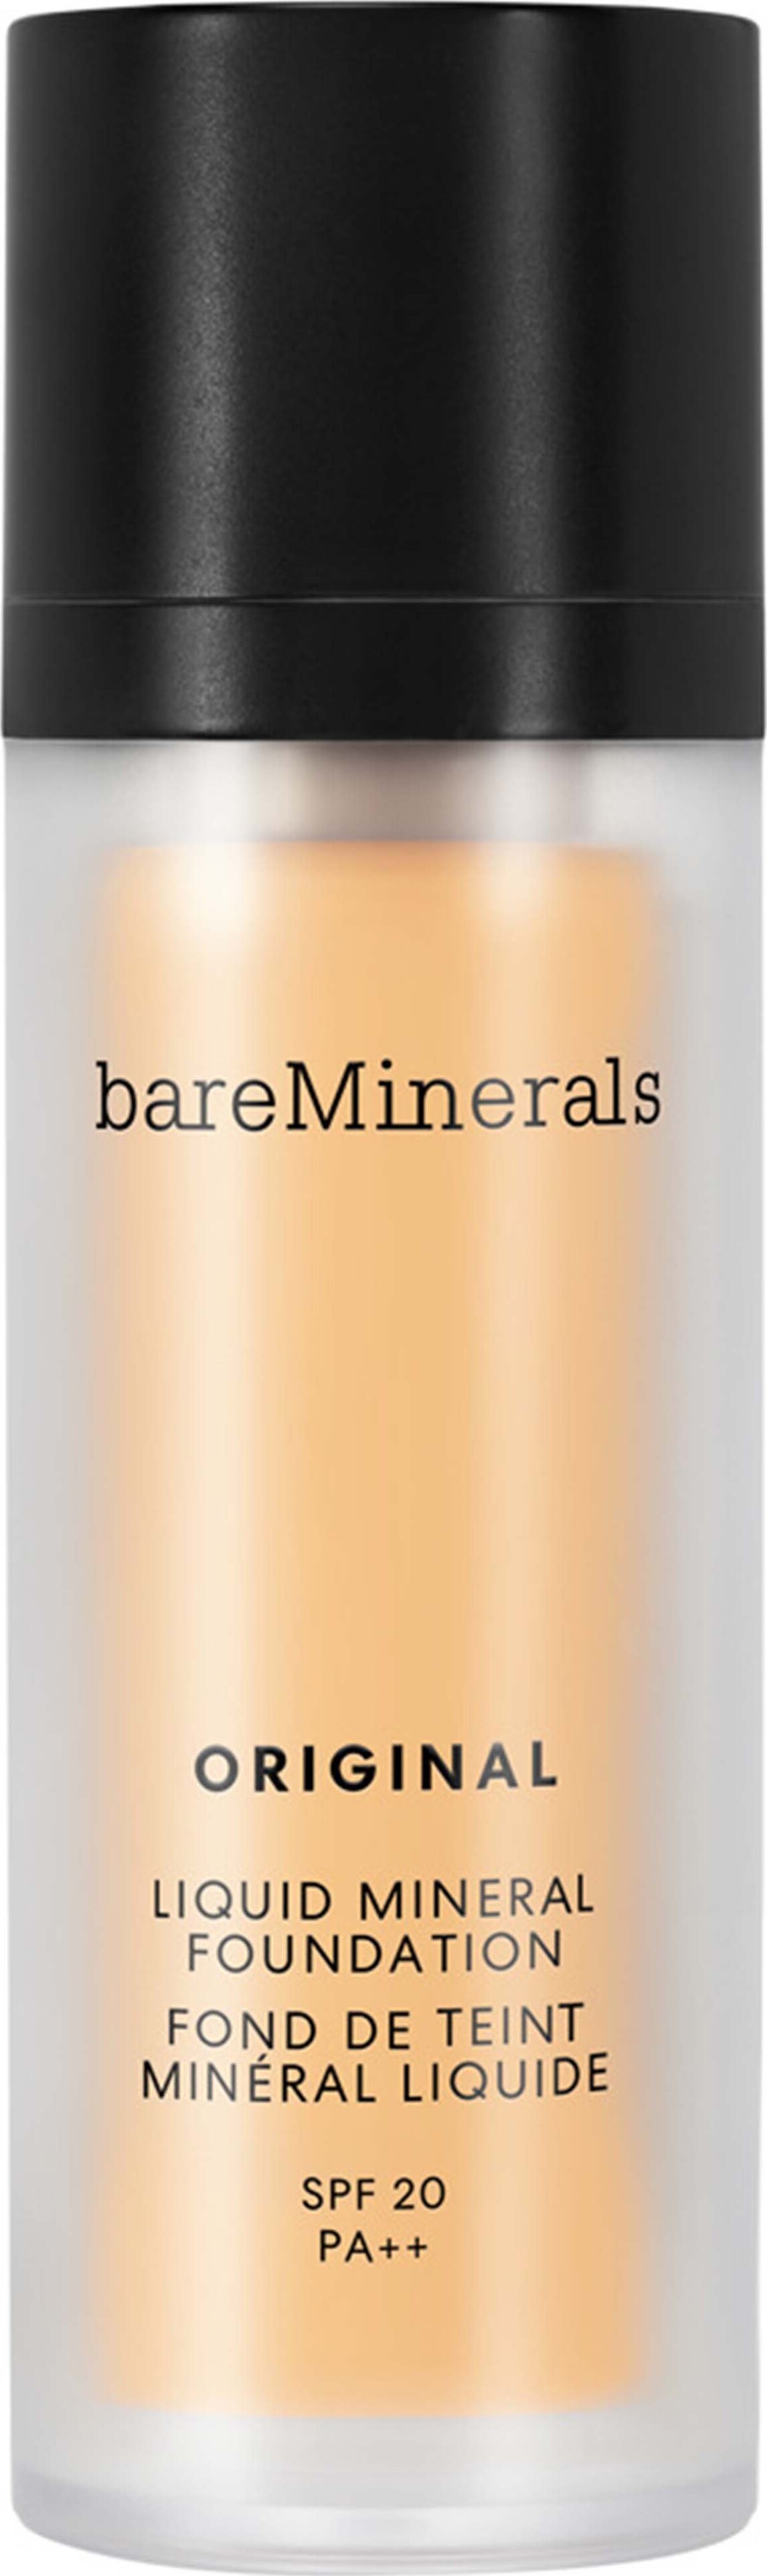 Bareminerals - Original Liquid Mineral Foundation - Golden Beige 13